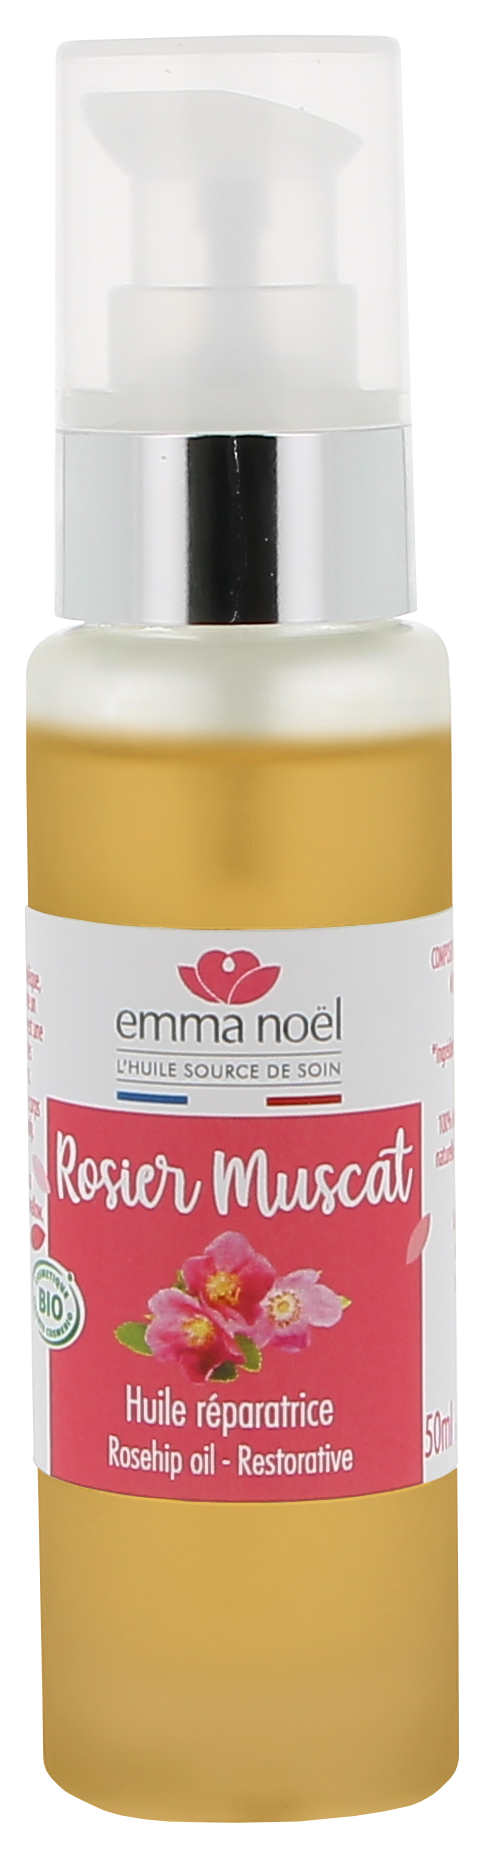 Emma Noël -- Huile vierge de rosier muscat bio - 50 mL